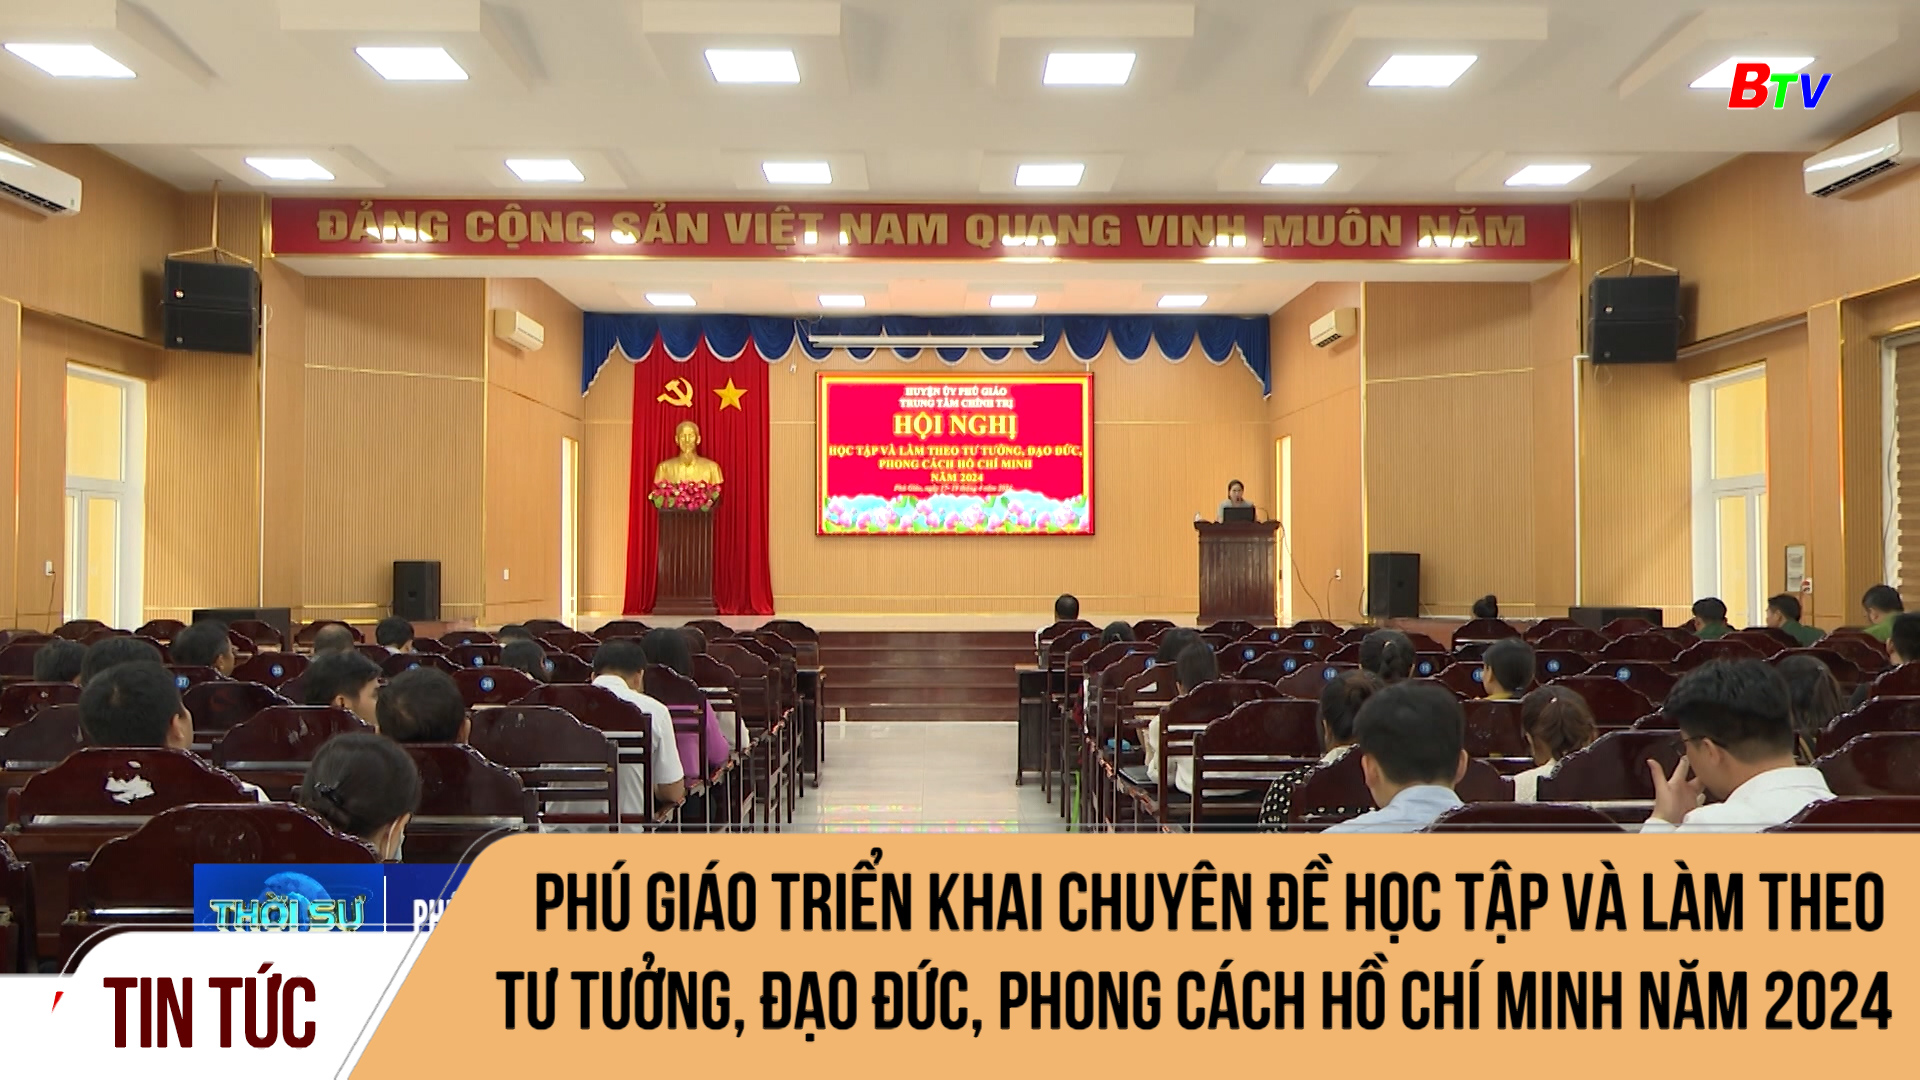 Phú Giáo triển khai chuyên đề học tập và làm theo tư tưởng, đạo đức, phong cách Hồ Chí Minh năm 2024